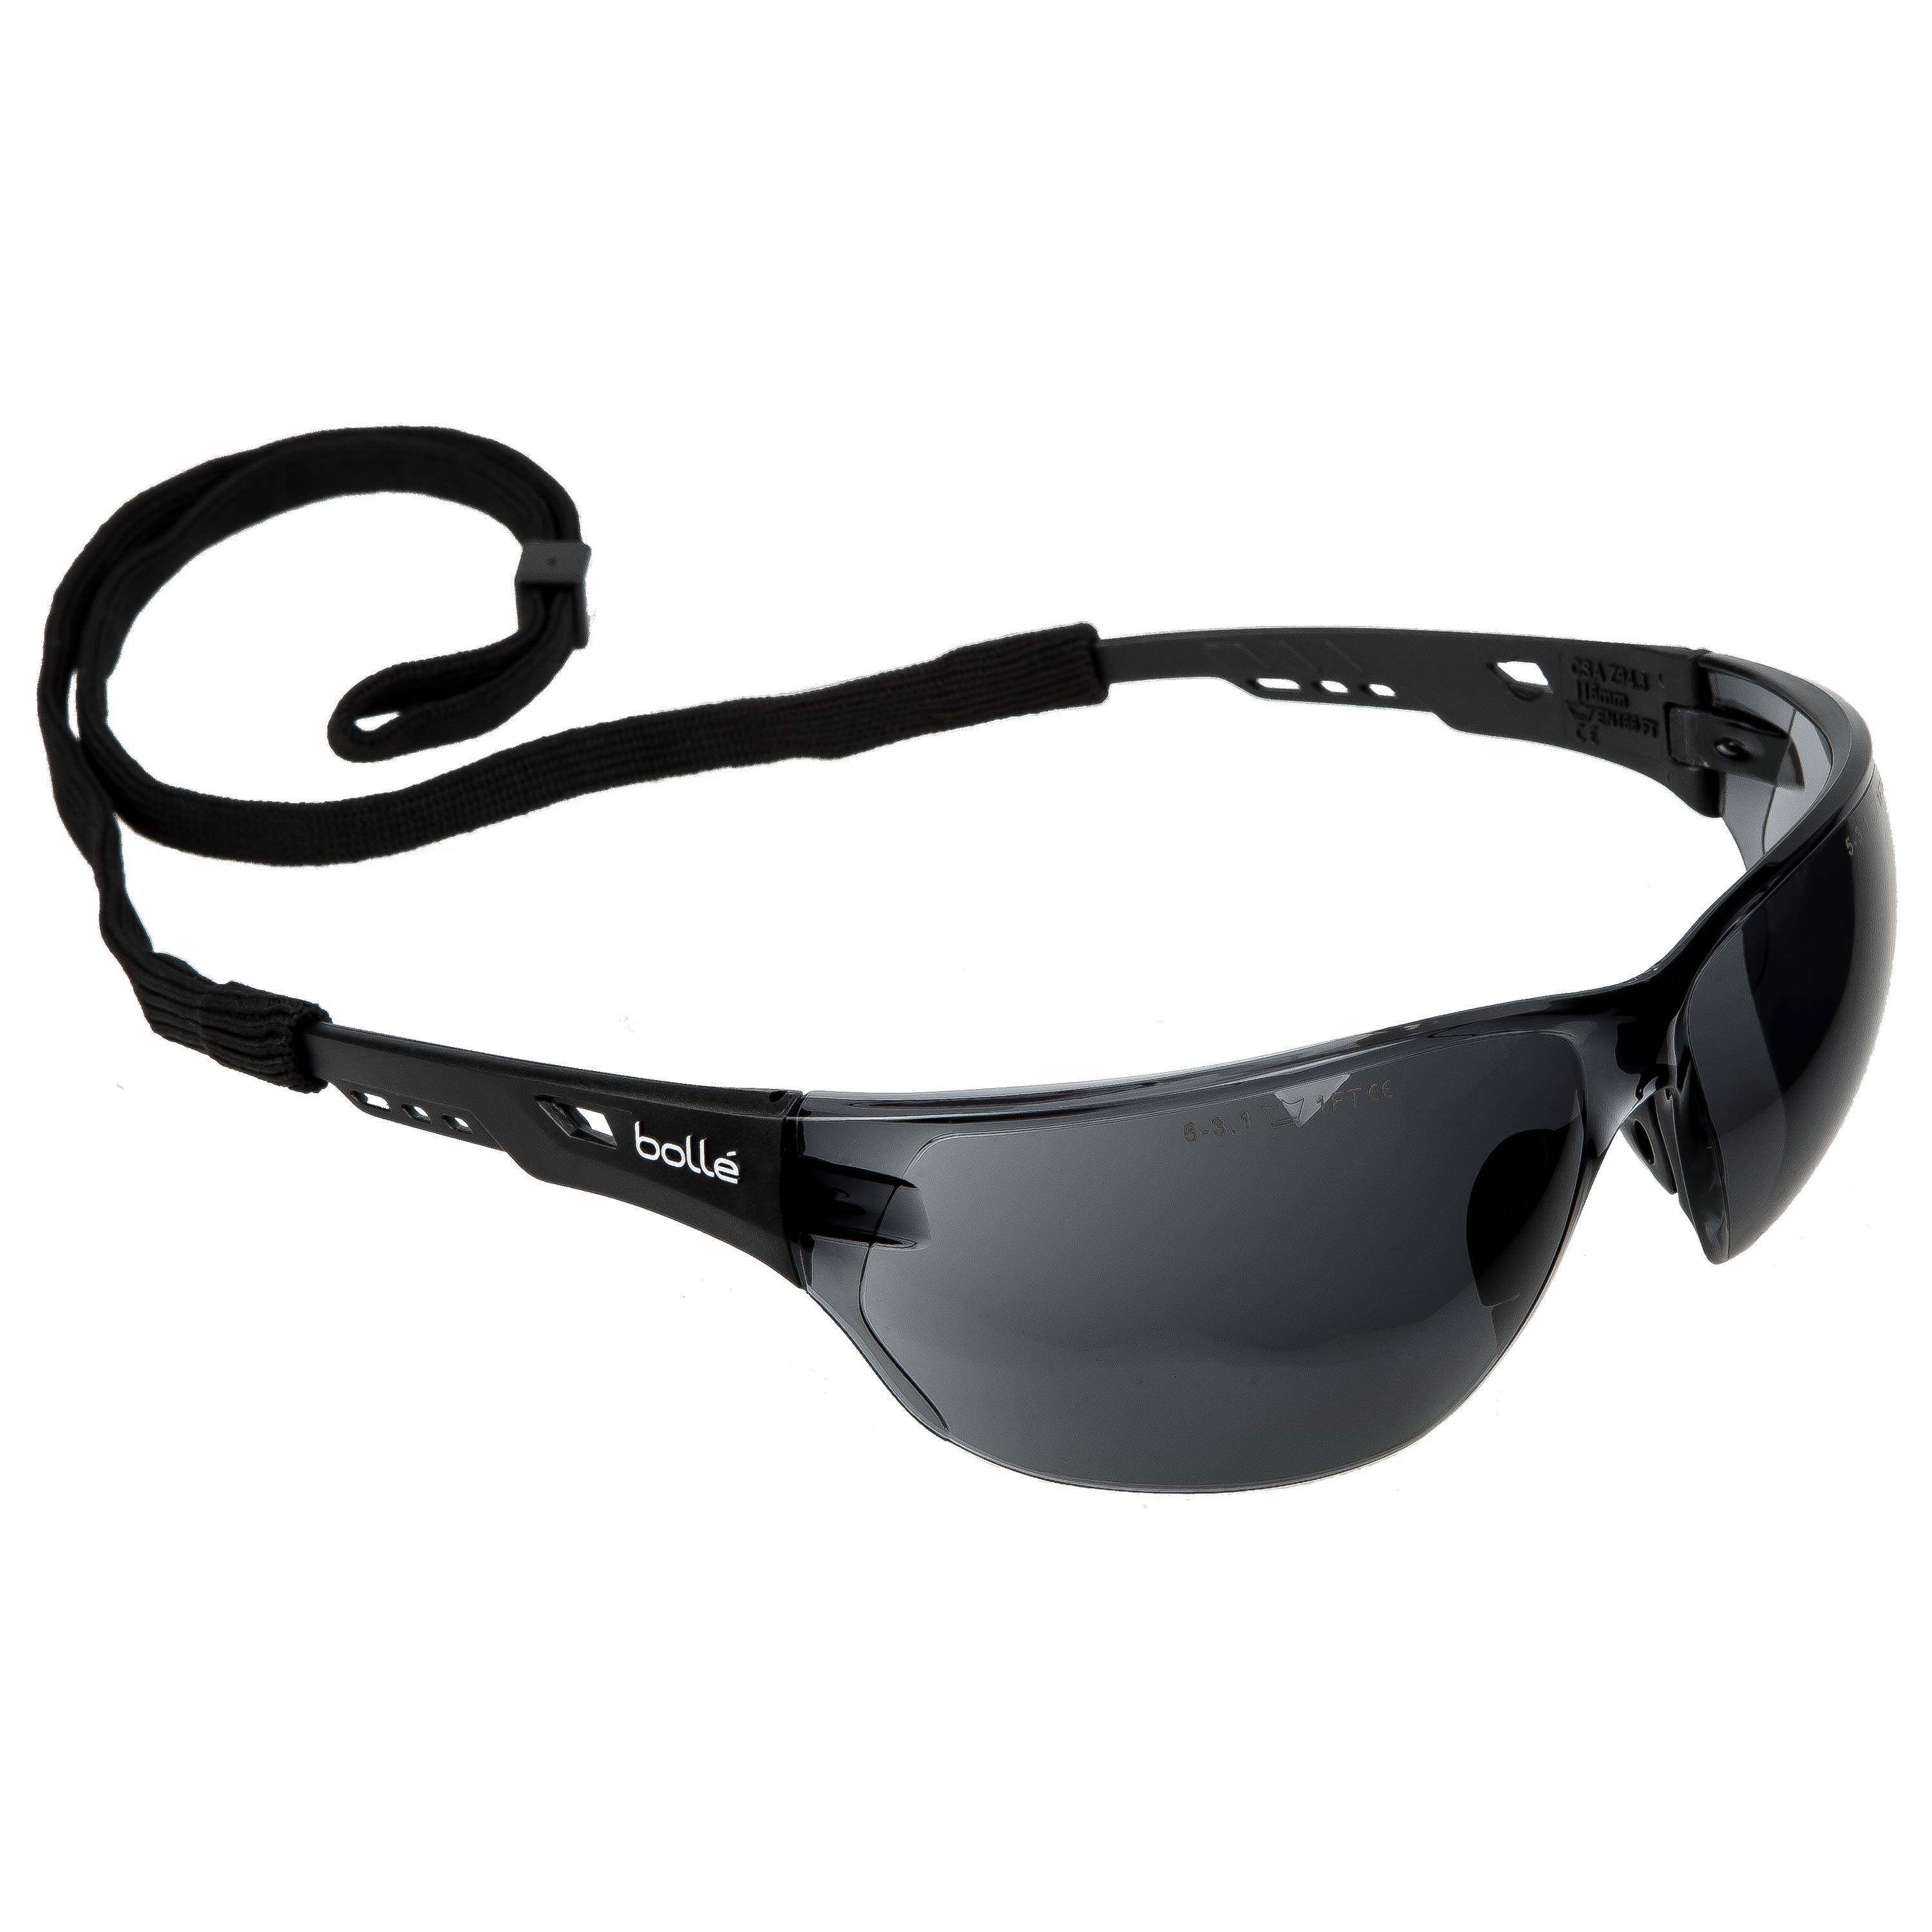 Bolle Ness Lunettes de sécurité Bolle lunettes anti-rayures anti-brouillard Lentille nesspsf 